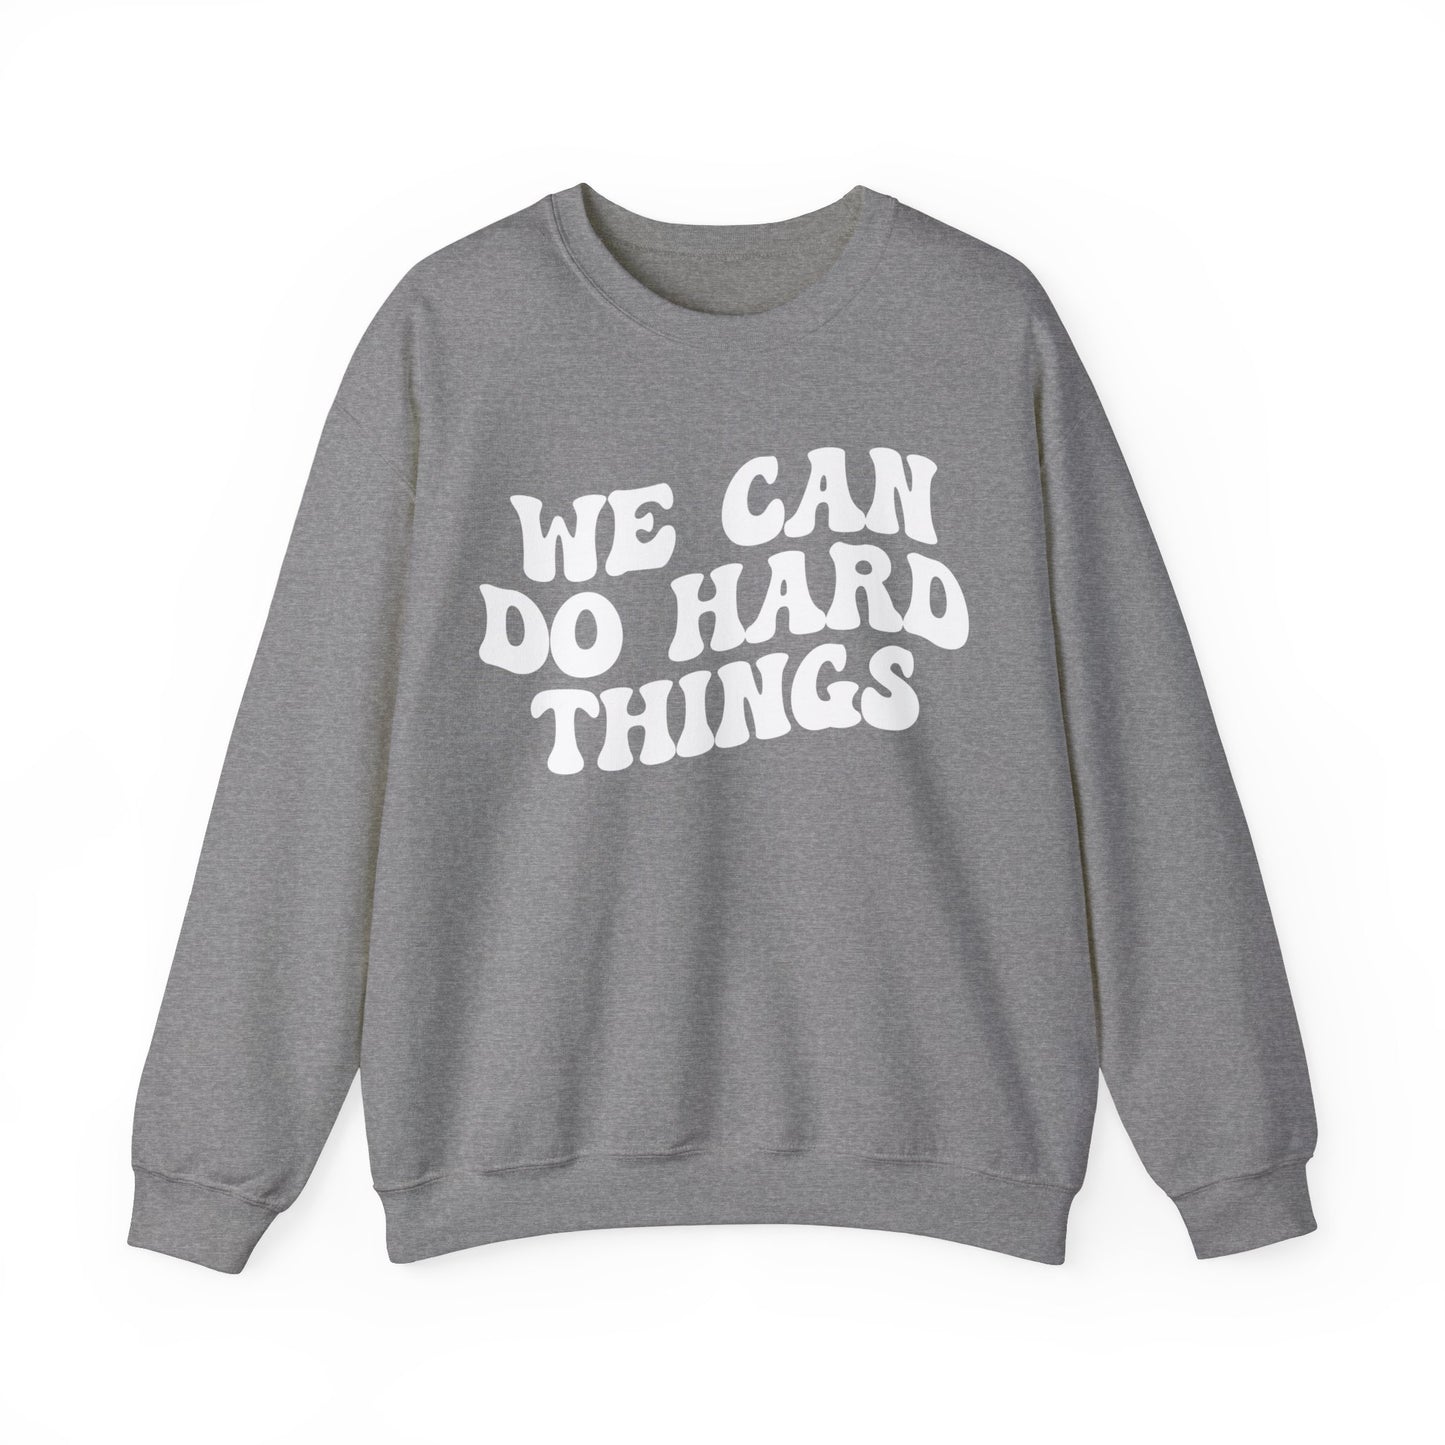 We Can Do Hard Things Sweatshirt, Take a Risk Sweatshirt, Strive Hard, State Testing Sweatshirt, Inspirational Sweatshirt for Women, S1468